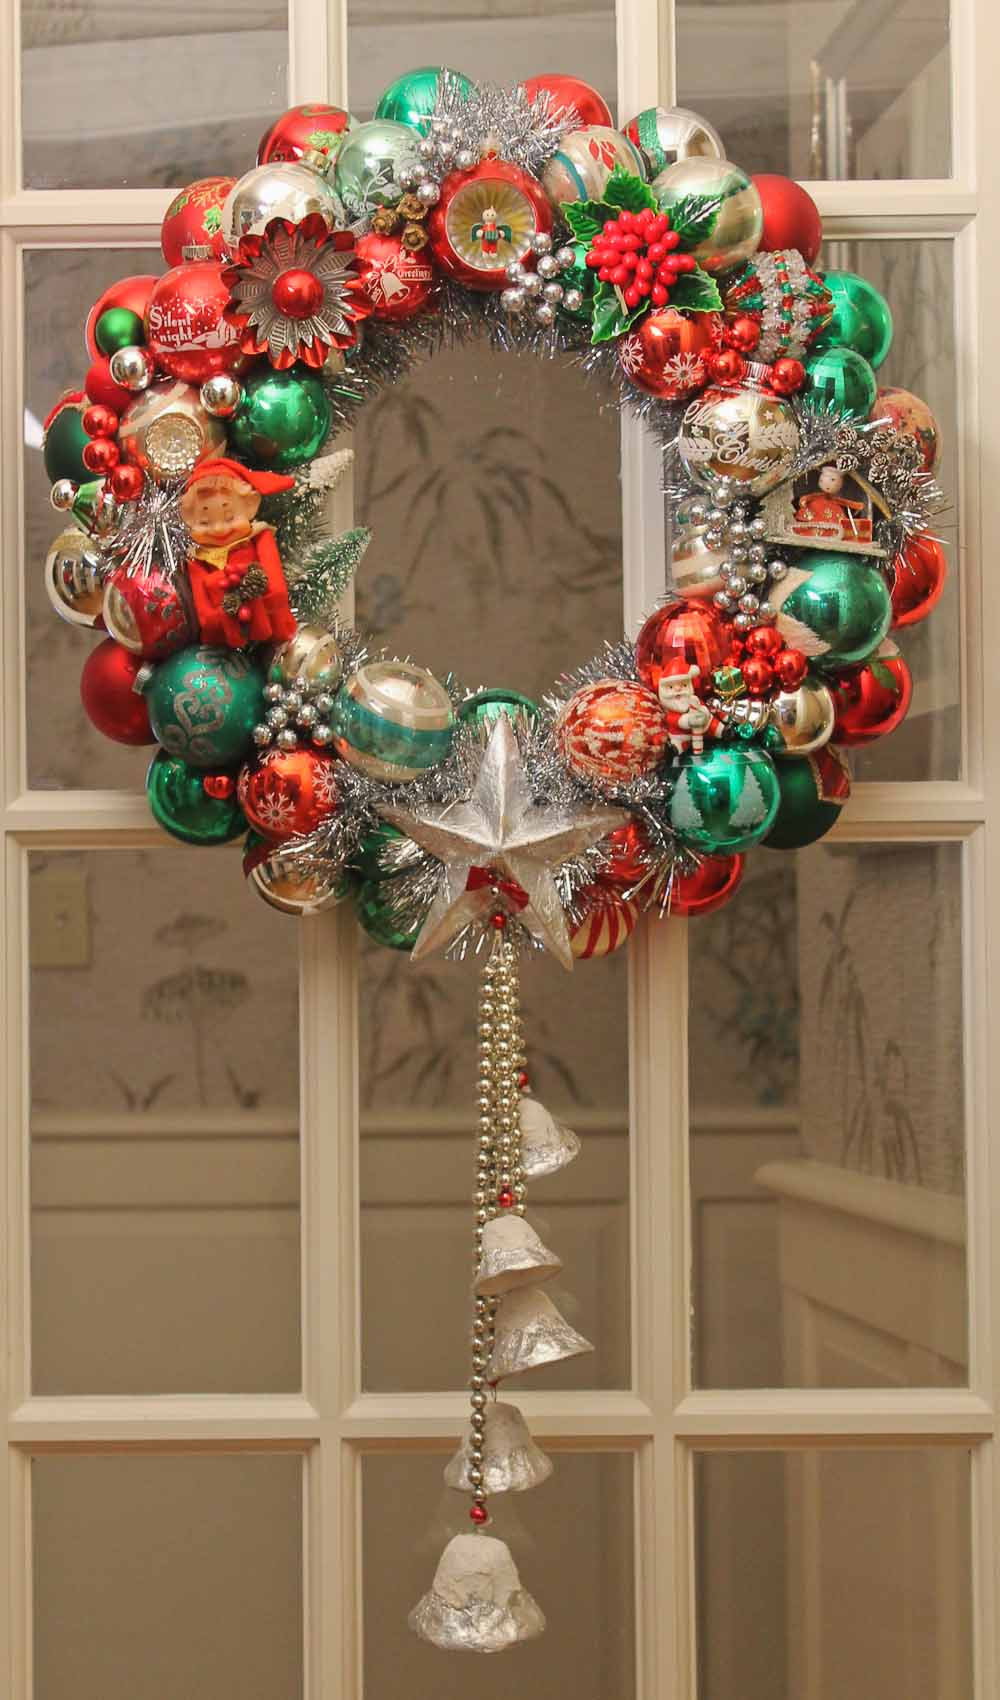 DIY Christmas Wreath
 100 photos of DIY Christmas ornament wreaths Upload